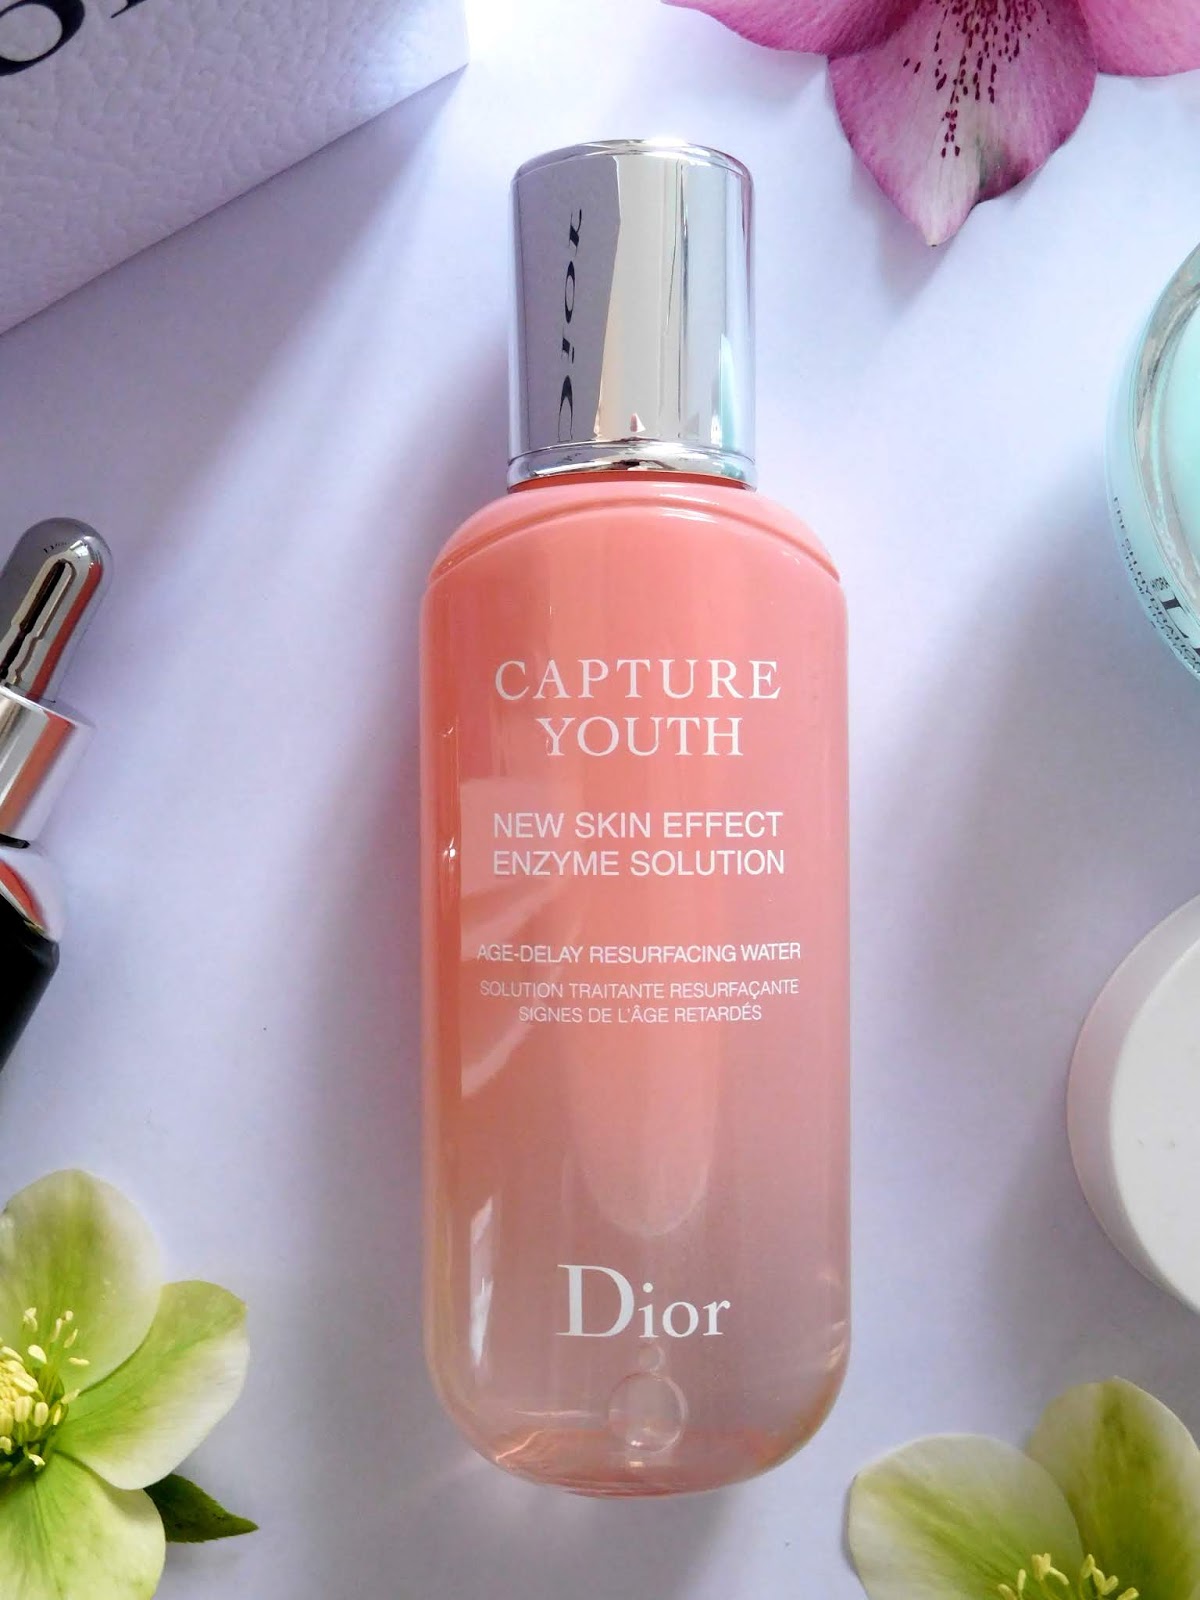 à¸�à¸¥à¸�à¸²à¸£à¸�à¹�à¸�à¸«à¸²à¸£à¸¹à¸�à¸�à¸²à¸�à¸ªà¸³à¸«à¸£à¸±à¸� dior capture youth new skin effect enzyme solution